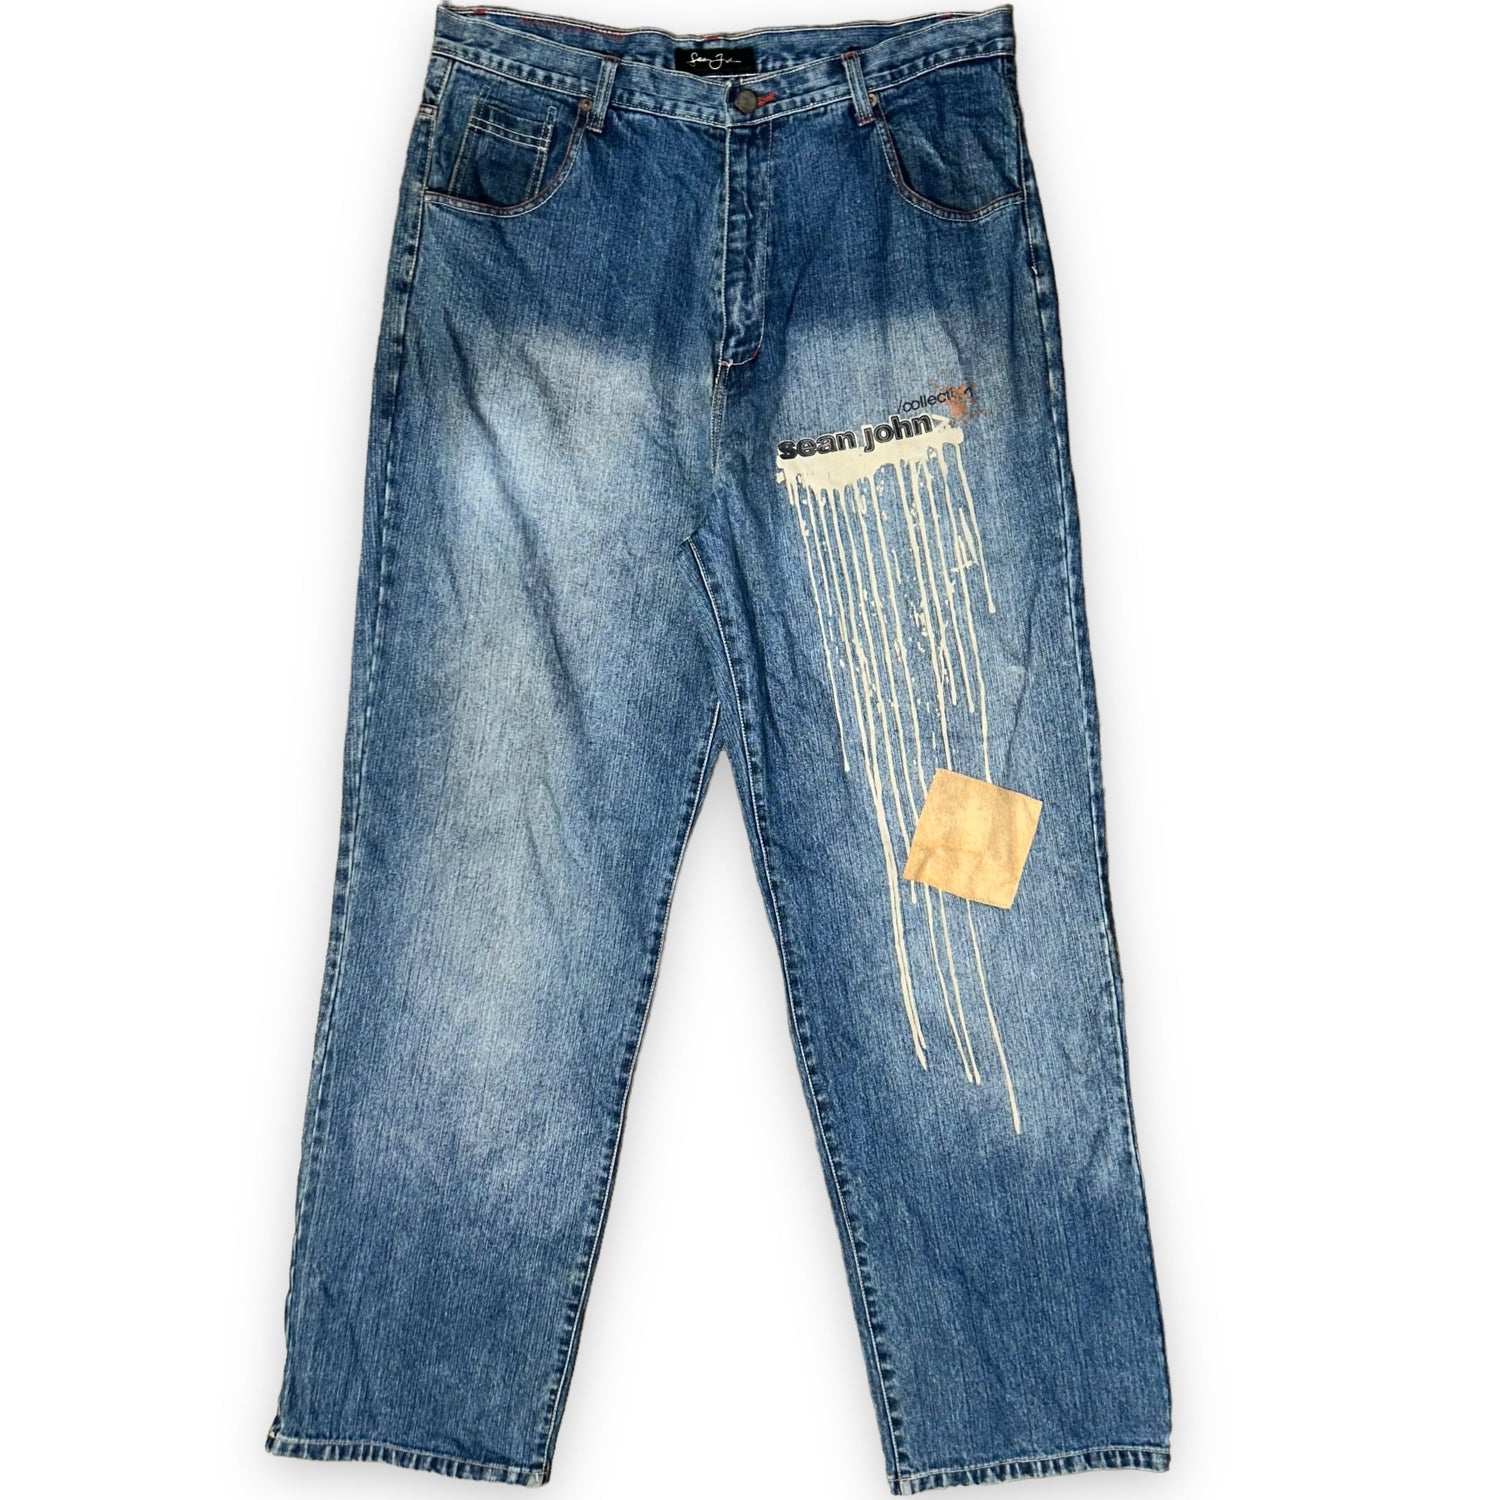 Baggy jeans Sean John vintage (38 USA XXL) - oldstyleclothing